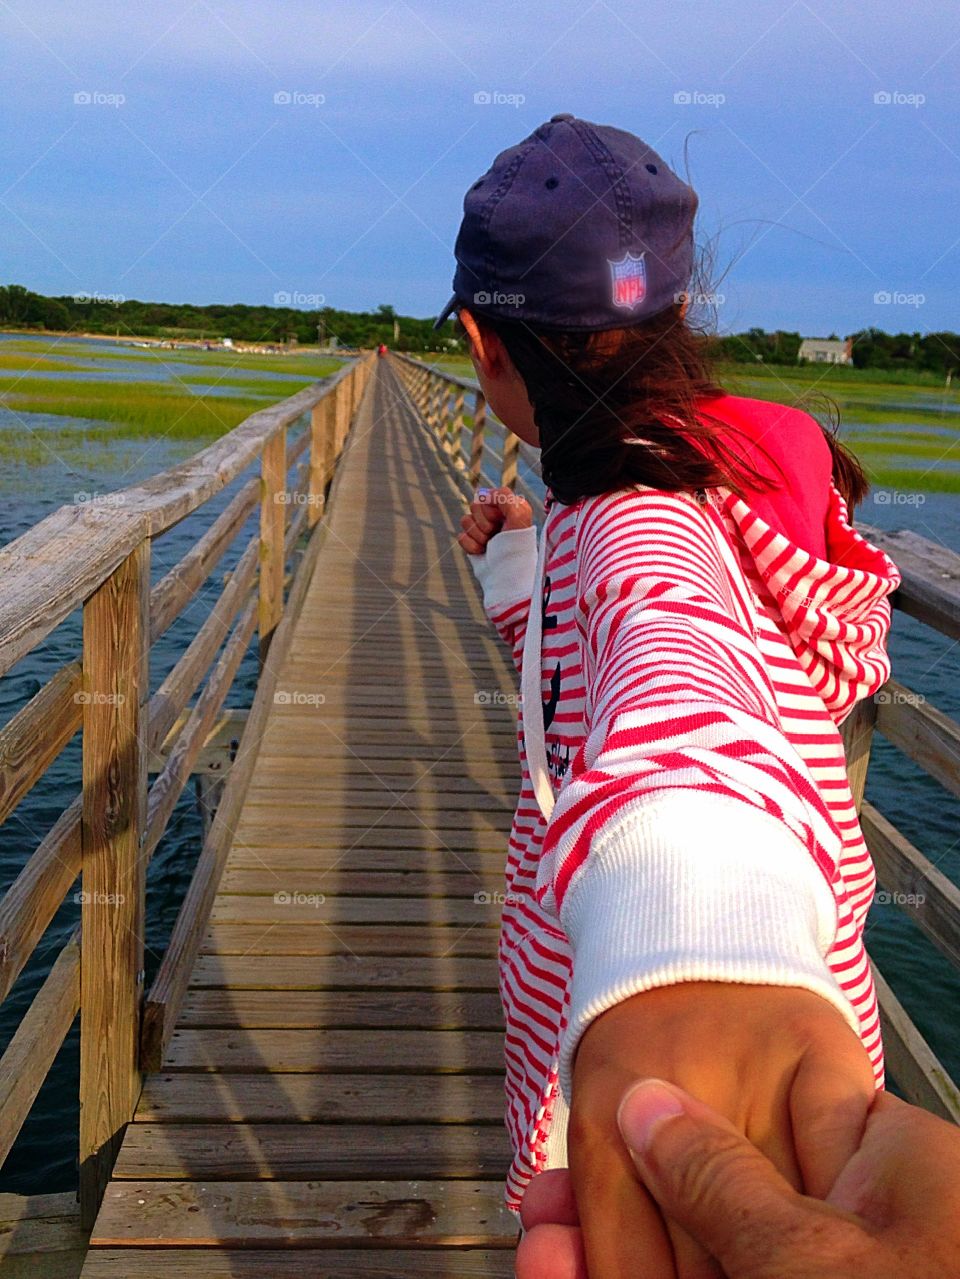 Boardwalk . Walking the Grey's Beach boardwalk in Cape Cod - follow me to mission